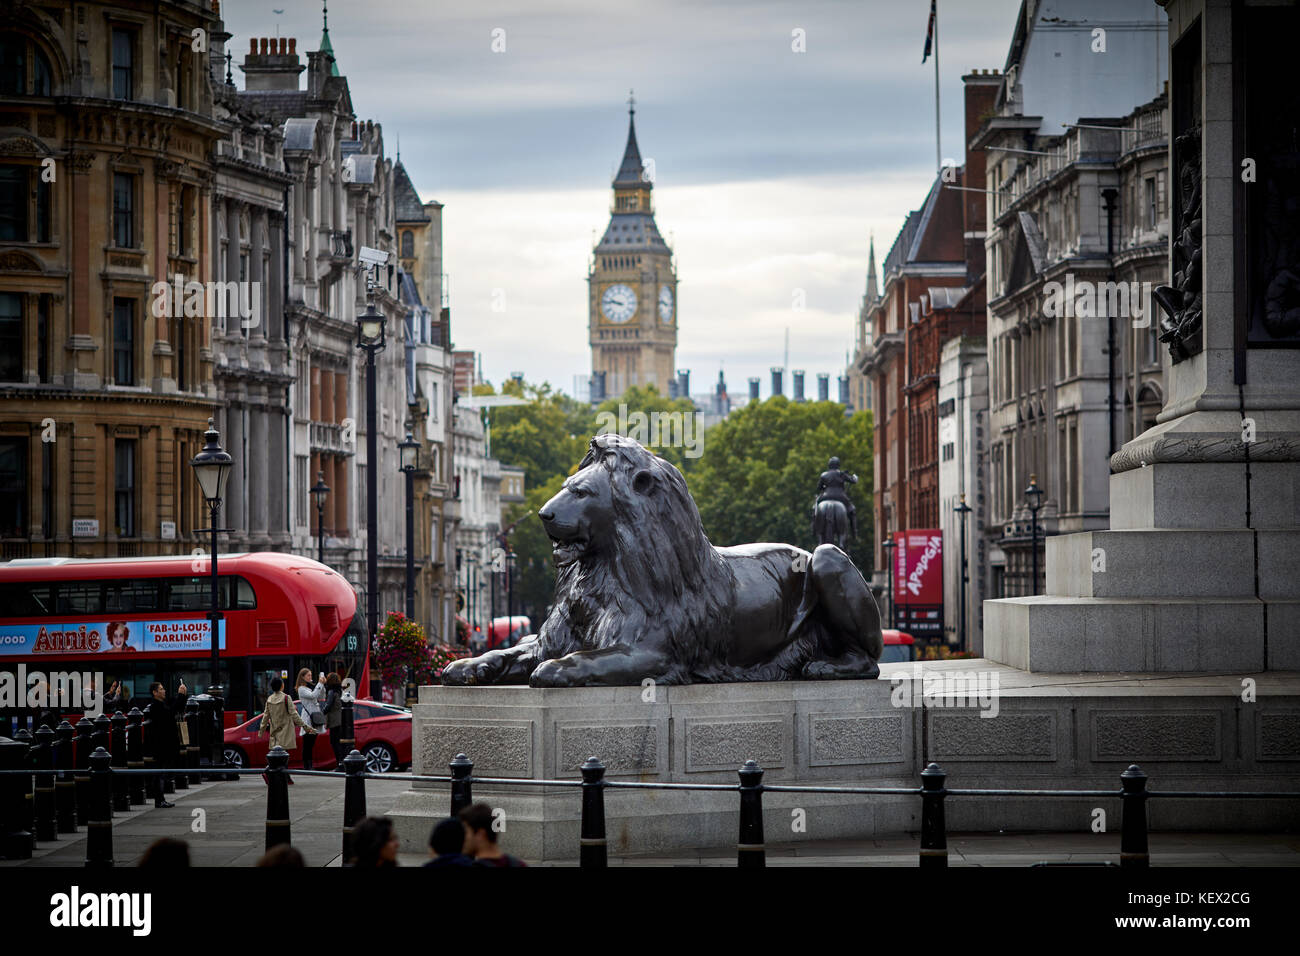 Sehenswürdigkeit Trafalgar Square Lions City von Westminster, Big Ben Uhrturm in London umrahmt die Hauptstadt von England Stockfoto